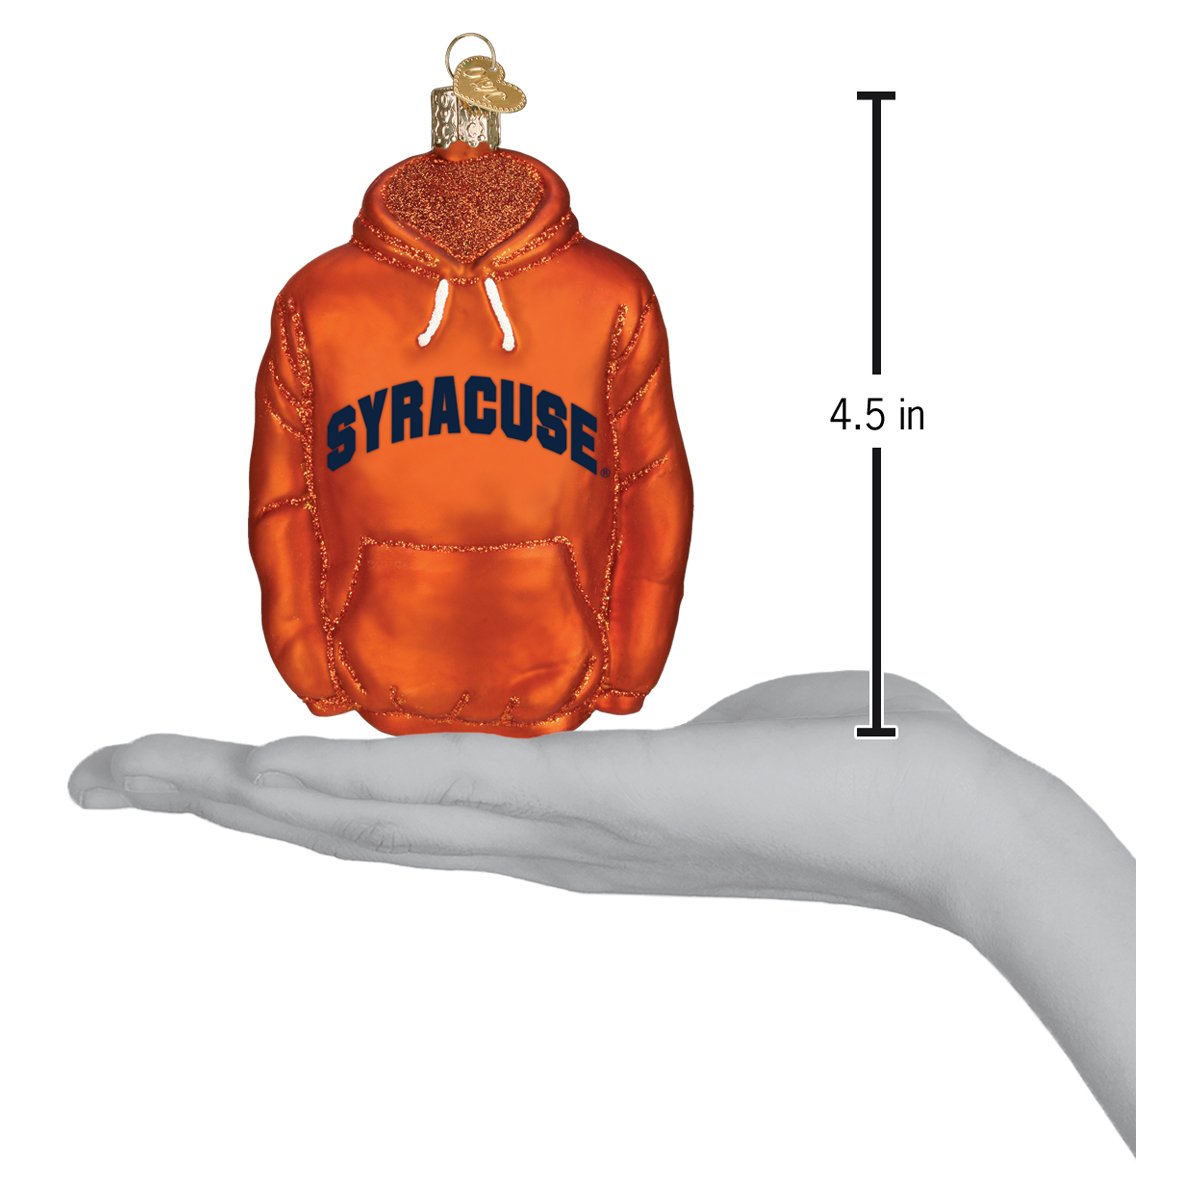 Syracuse Hoodie Ornament